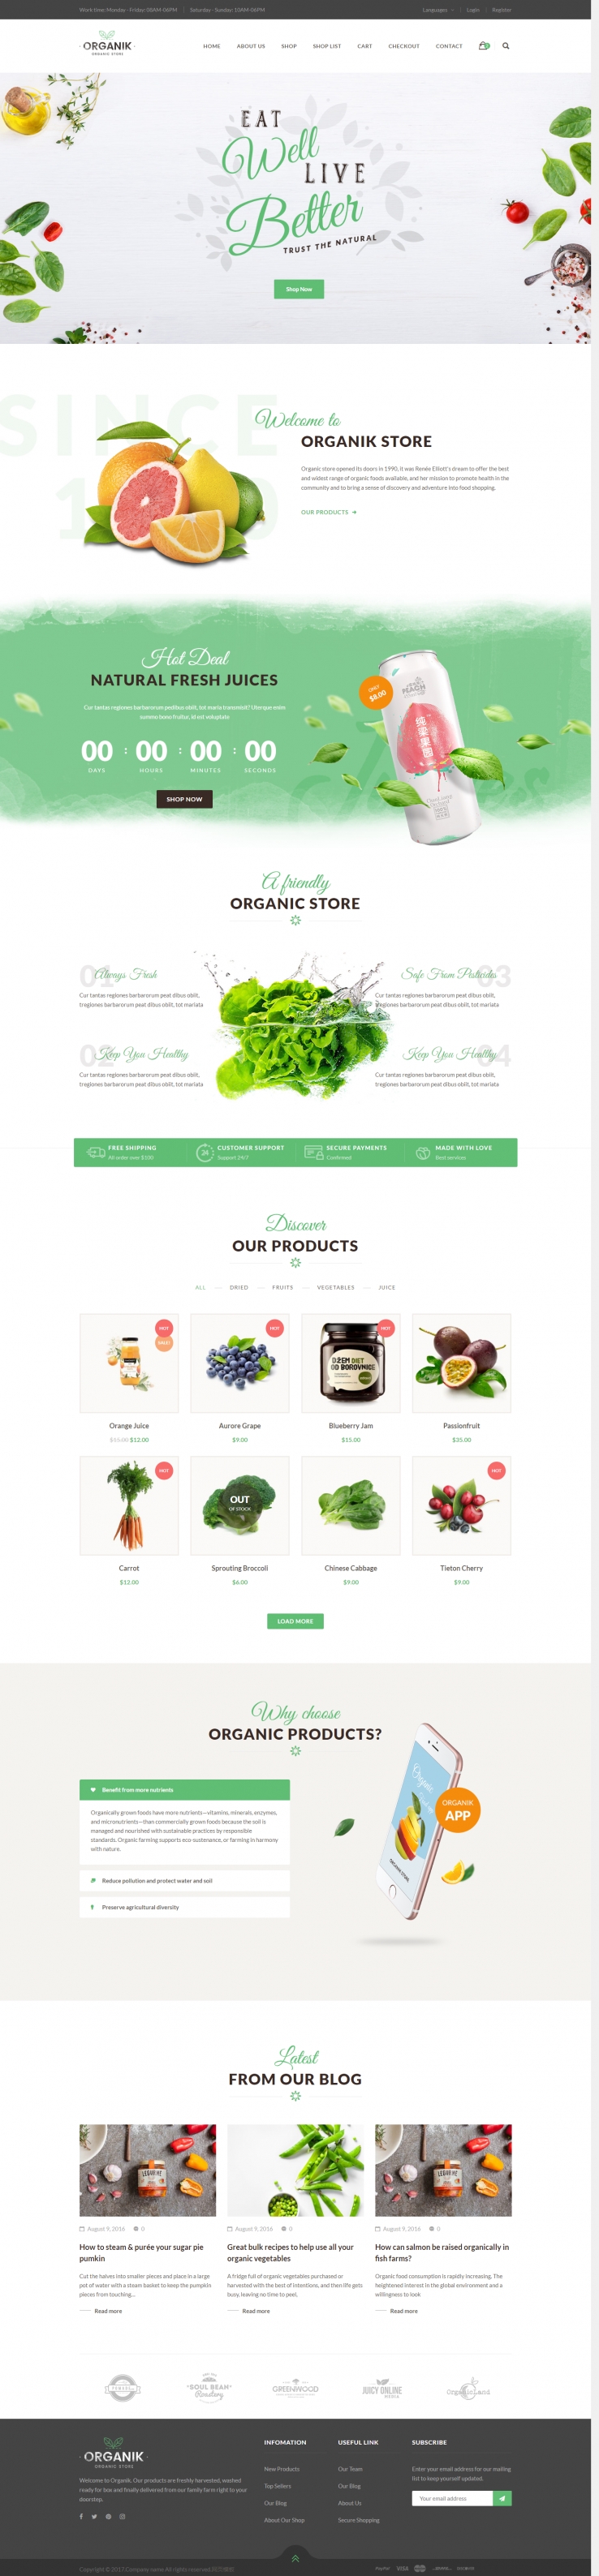 白色宽屏风格的果蔬网上商城整站网站模板